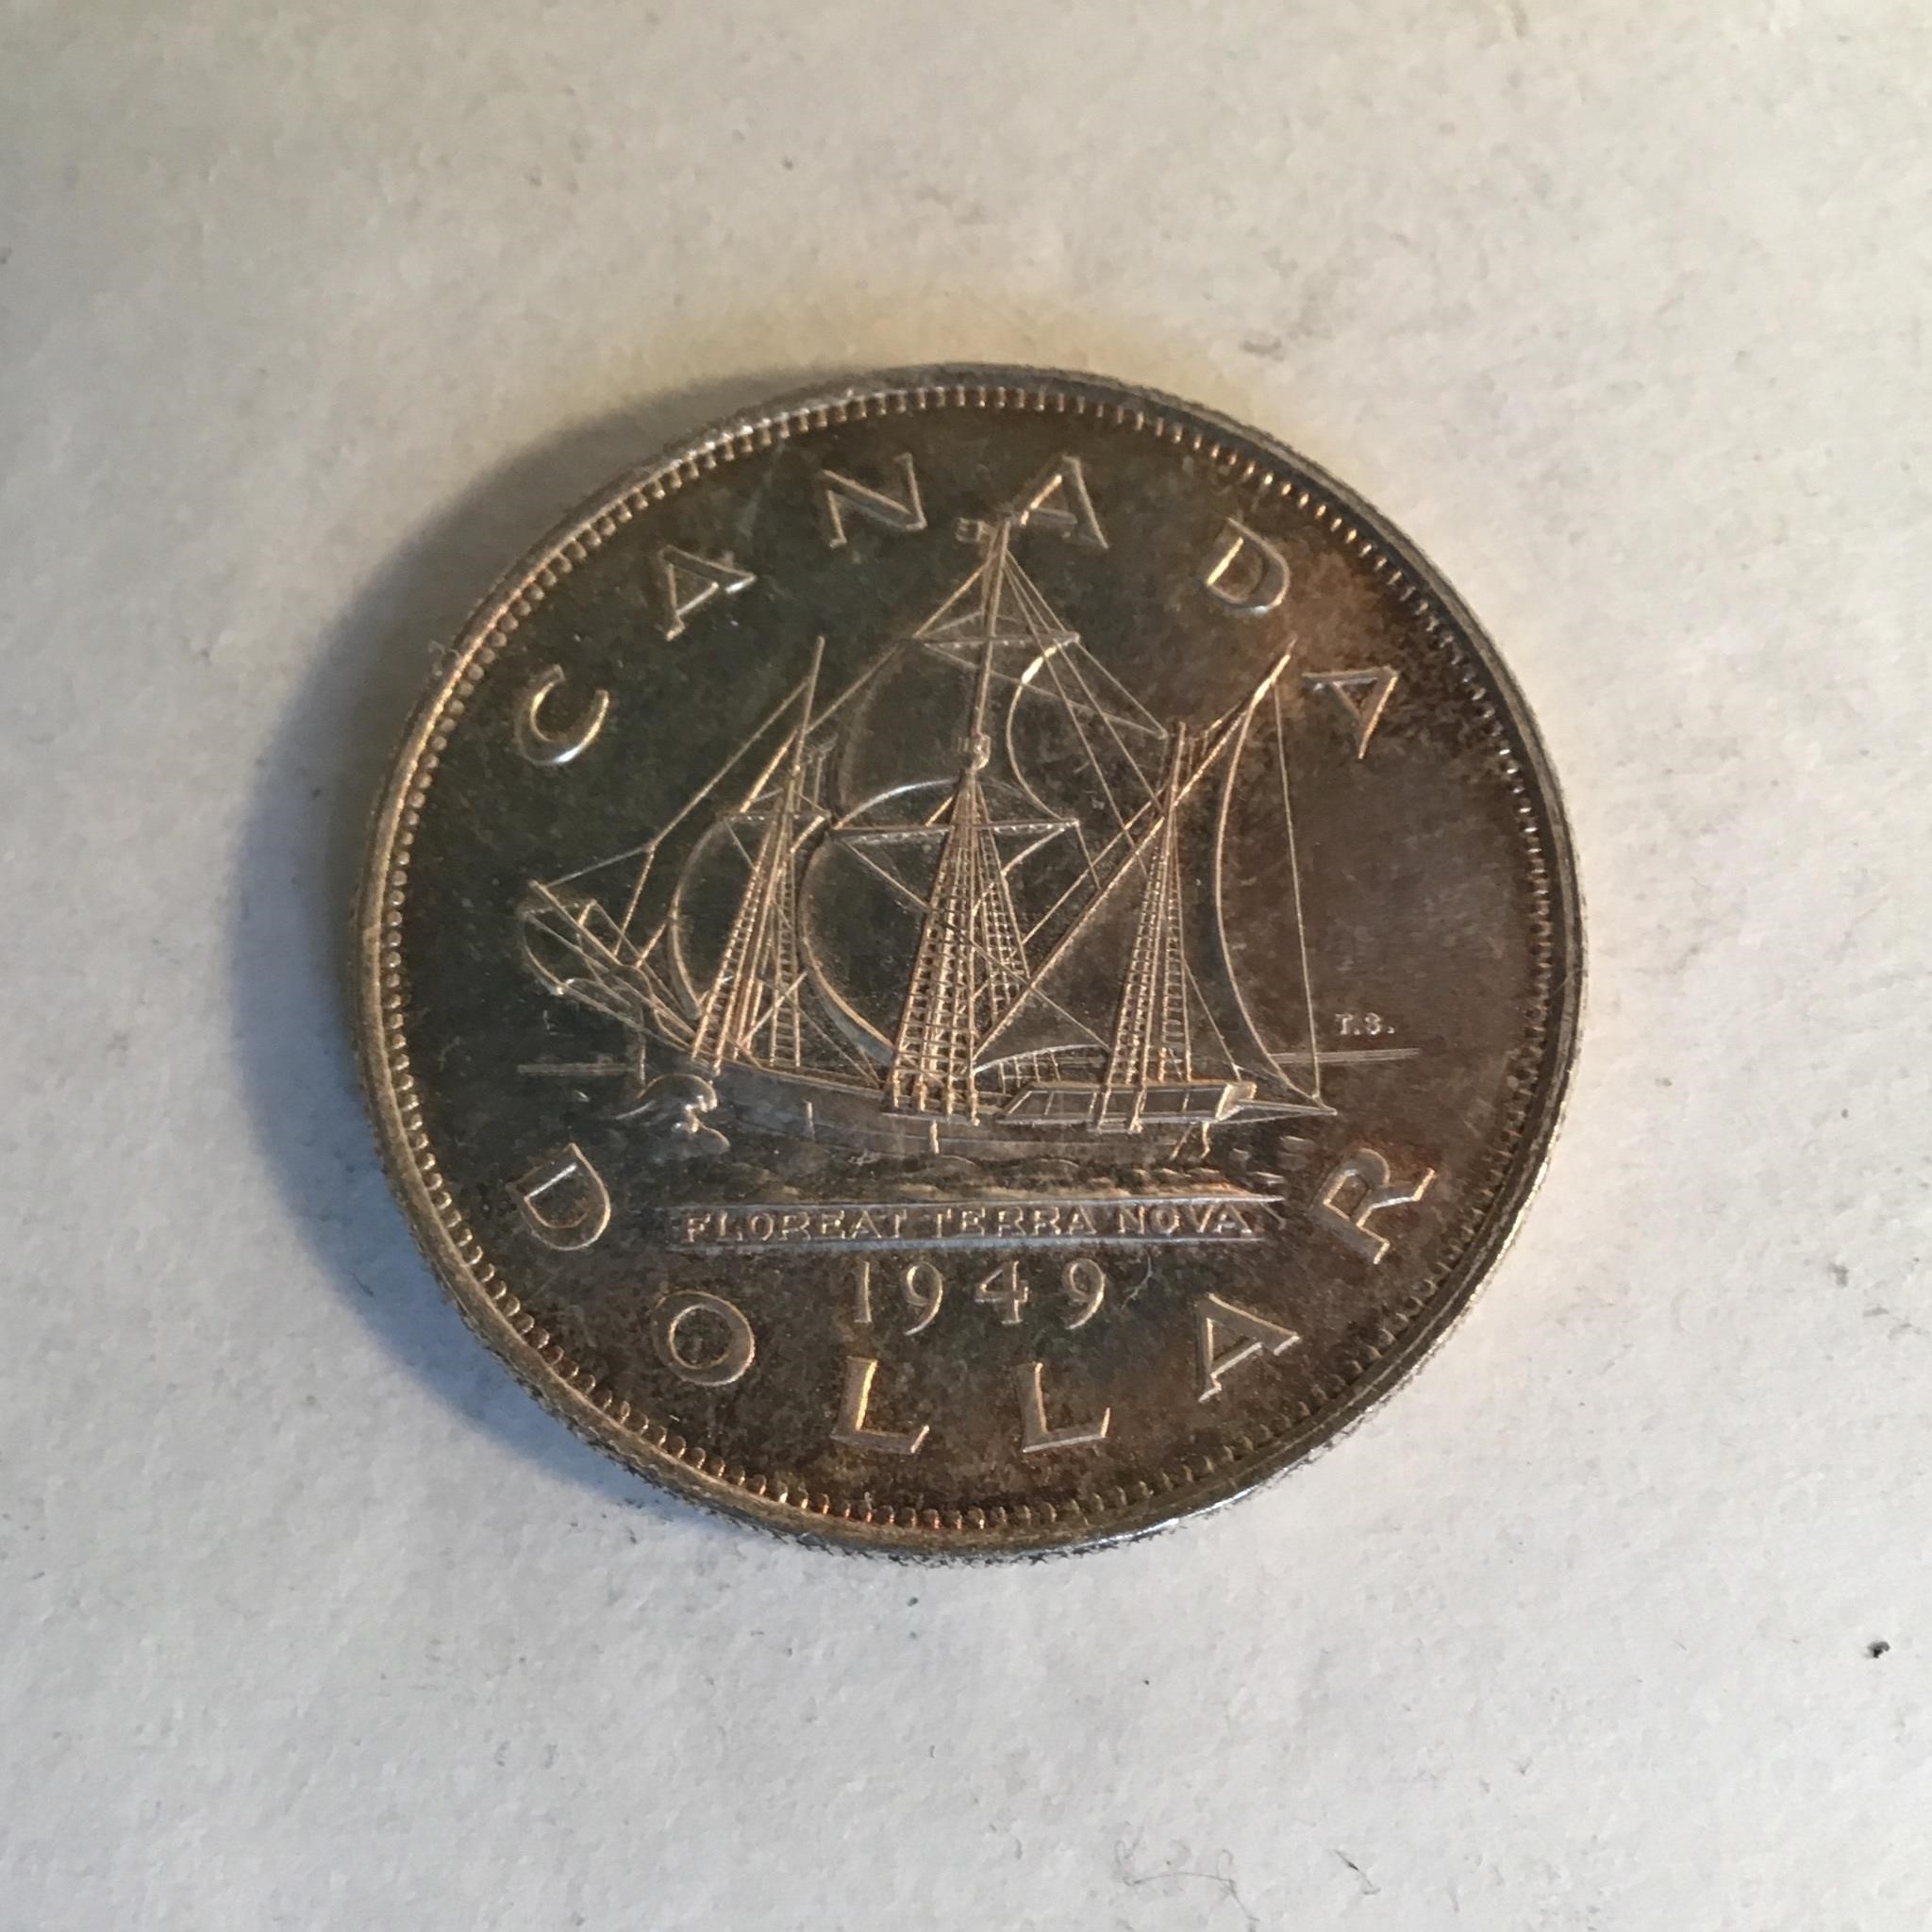 CANADIAN 1949 SILVER DOLLAR